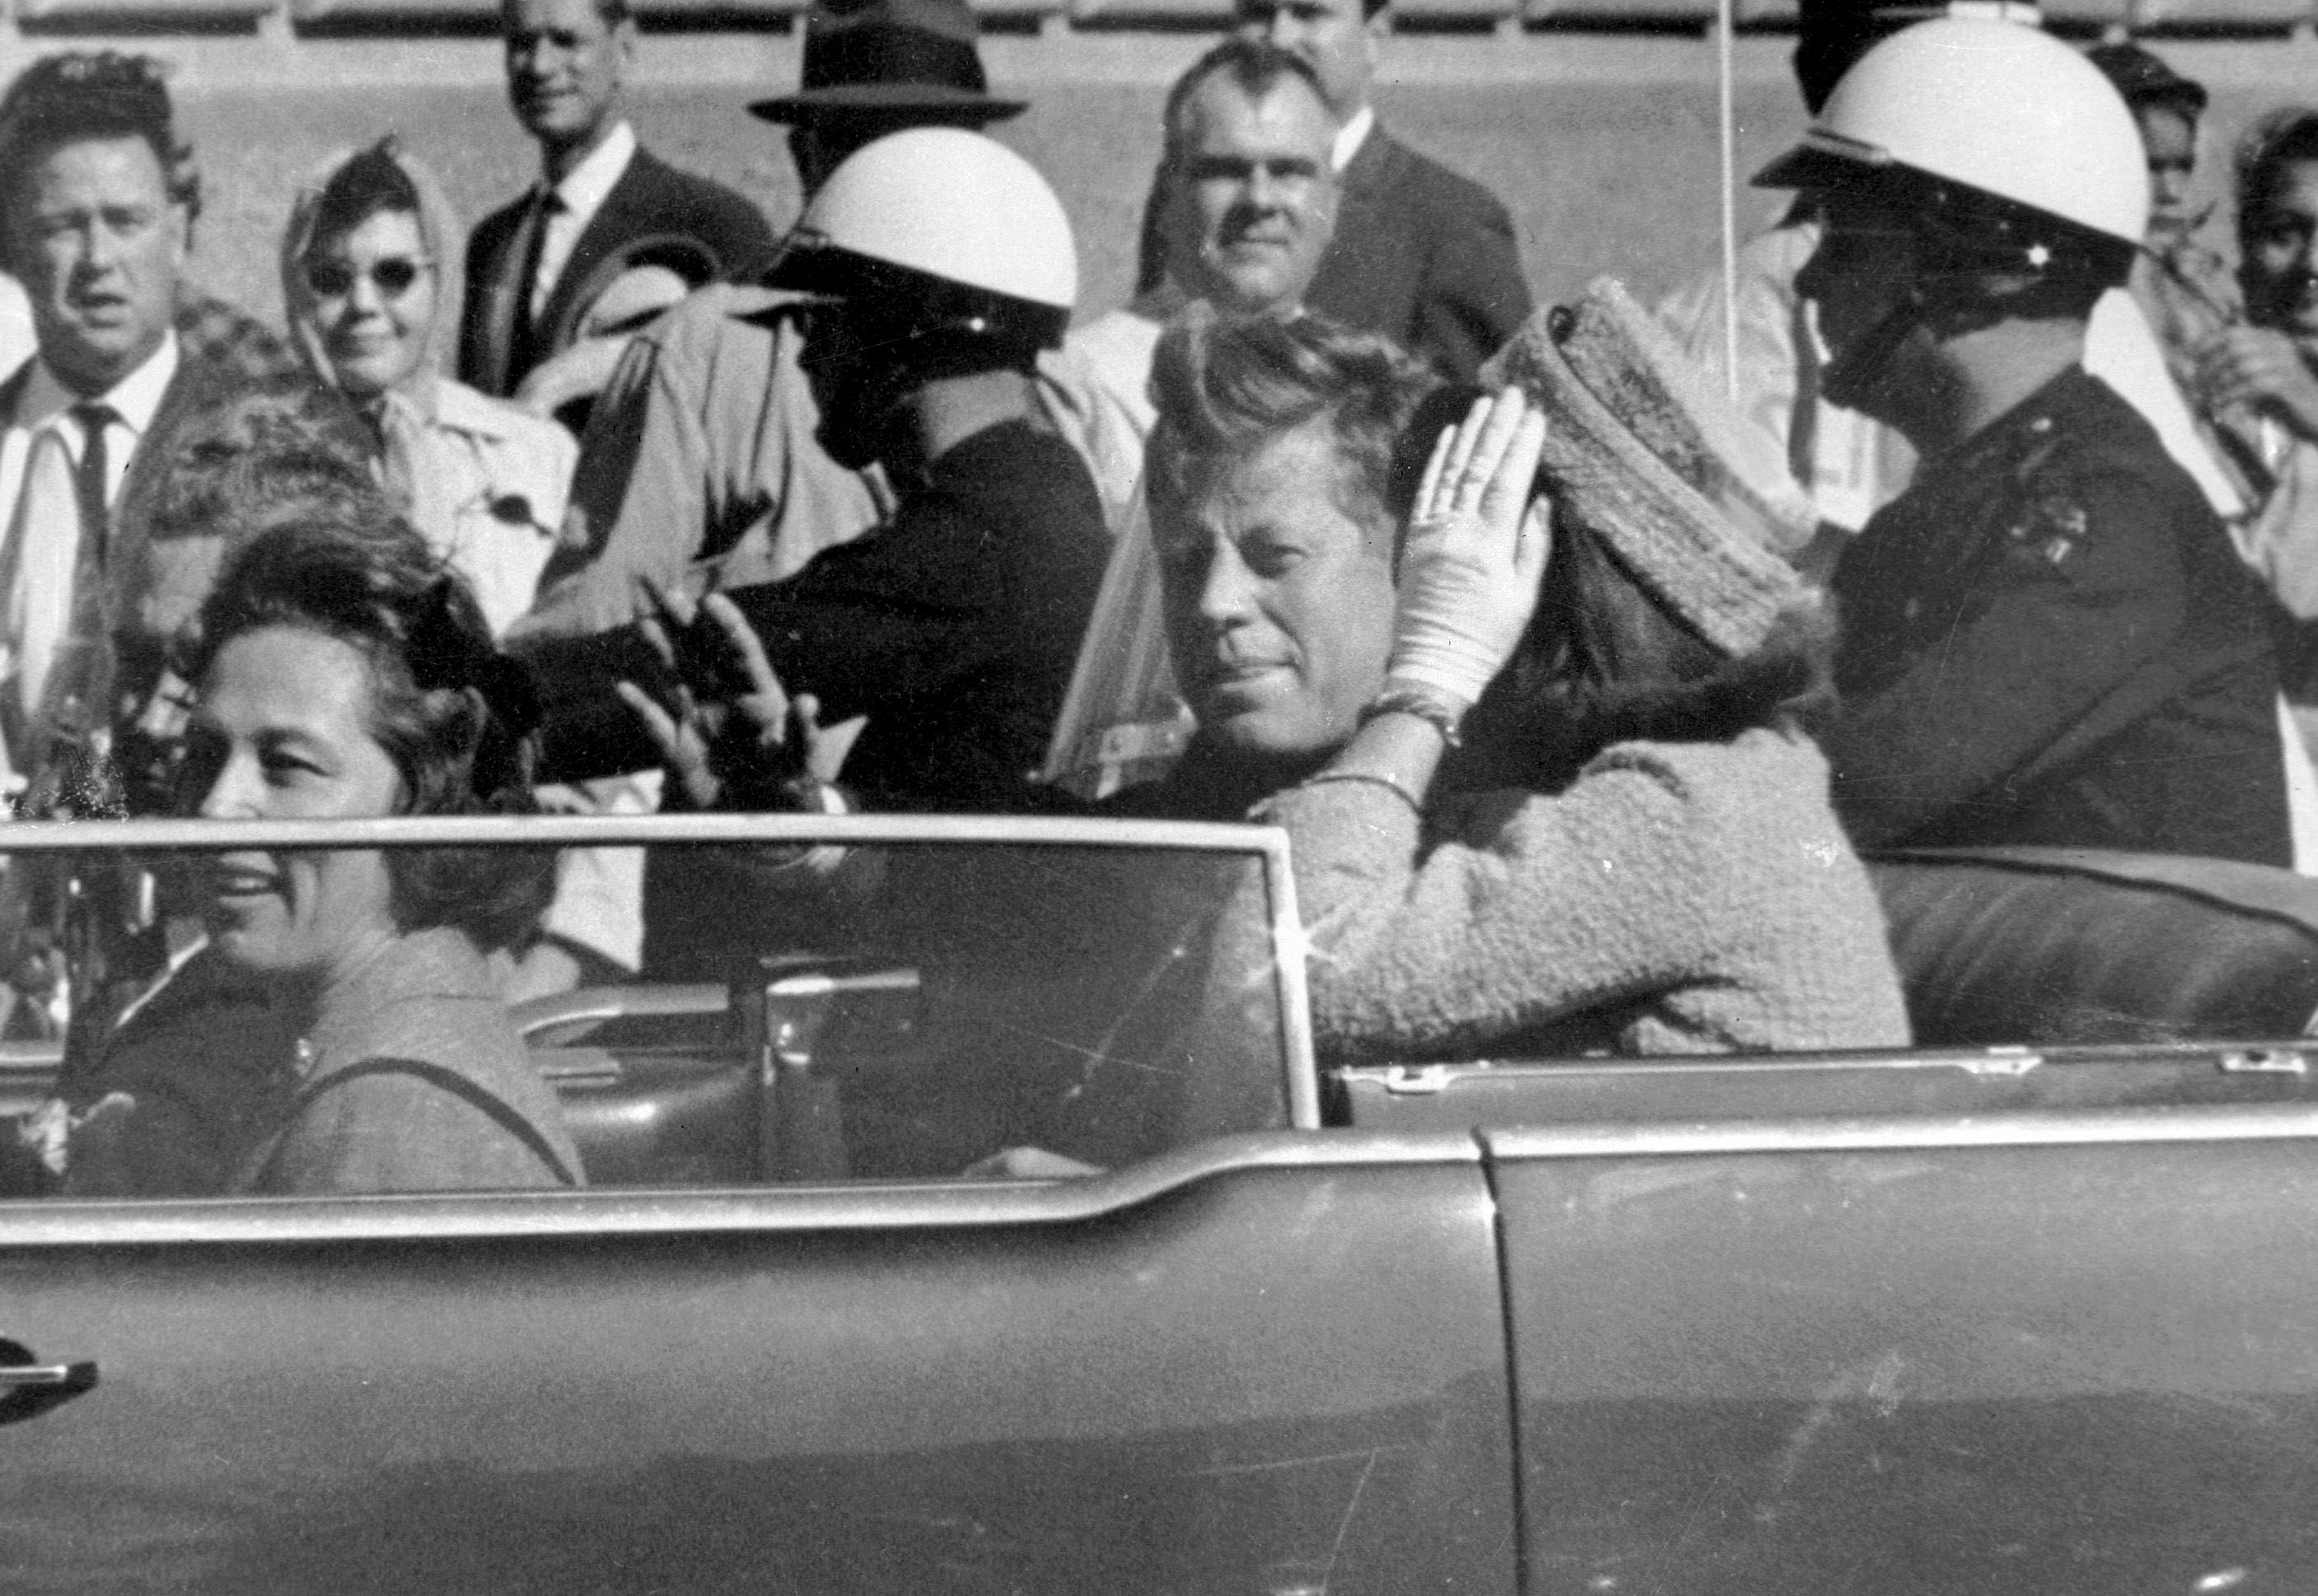 Las inconsistencias de la investigación oficial, la falta de pruebas, el rápido asesinato de Oswald, el pasado sinuoso de Ruby, las falencias de la CIA y el FBI, abonaron las sospechas sobre la "historia oficial" del crimen de Kennedy (AP Photo/Jim Altgens, File)